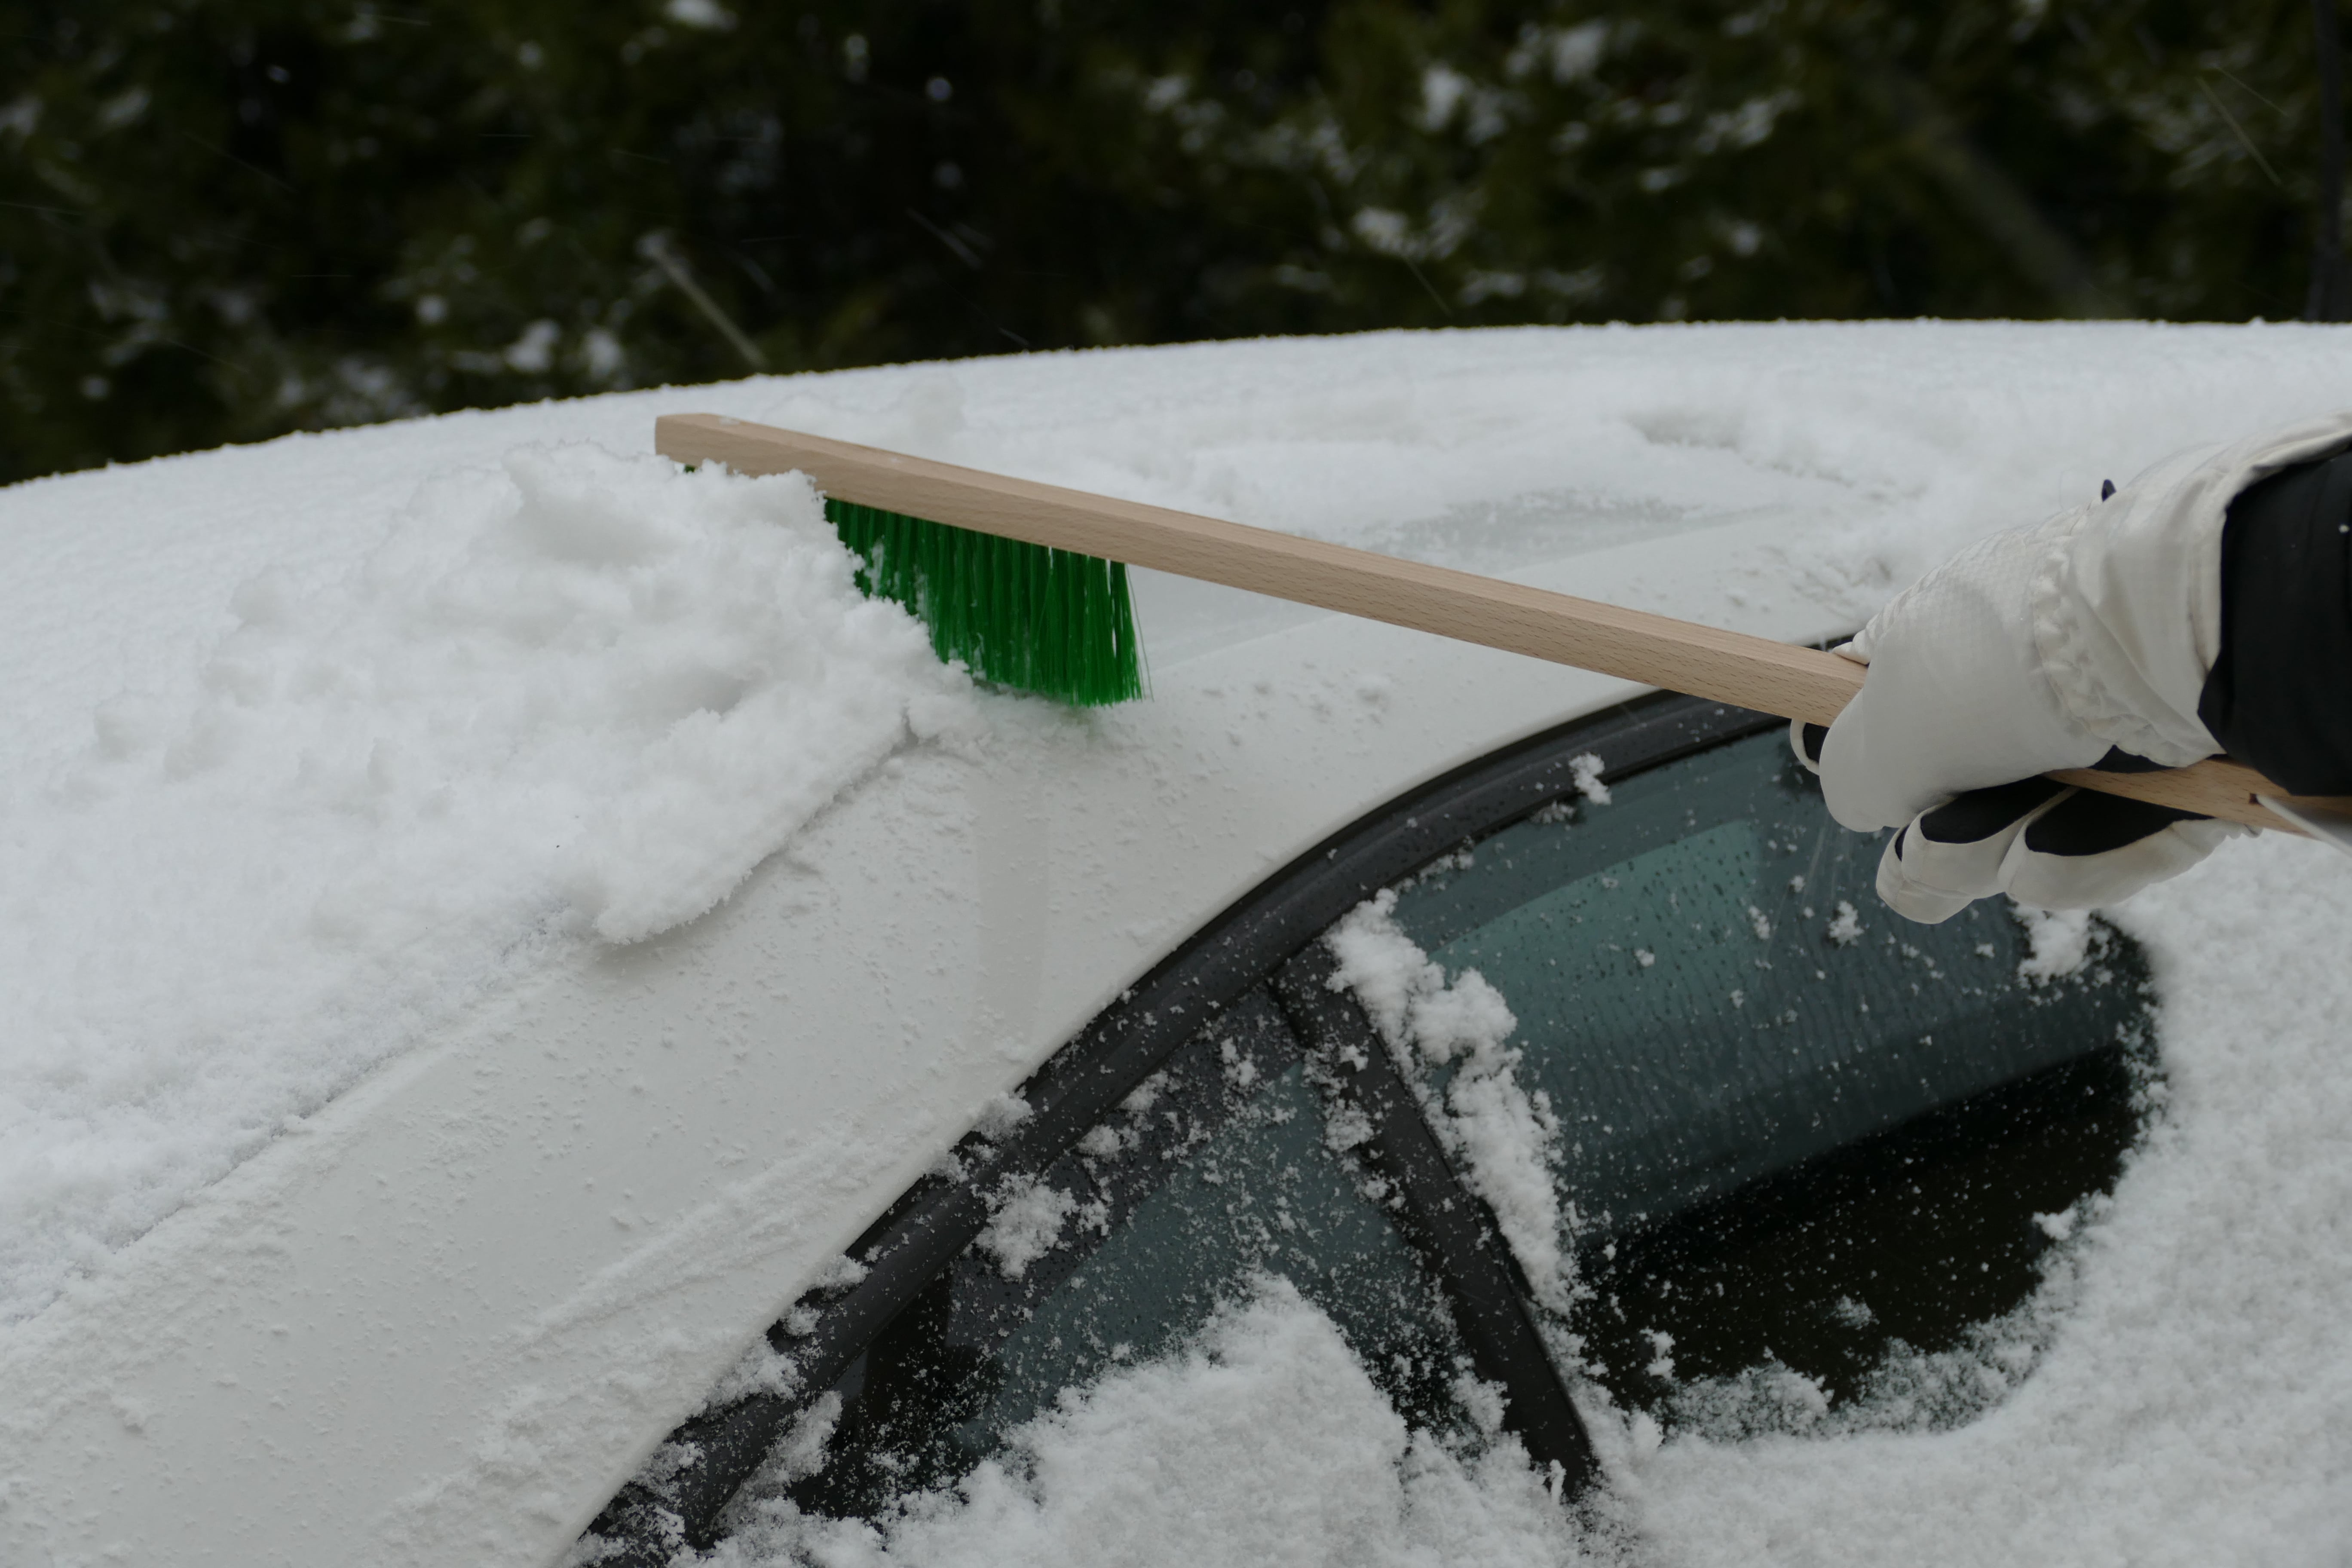 Augustin Group Auto Schneebürste Schneefeger Handfeger Schneebesen